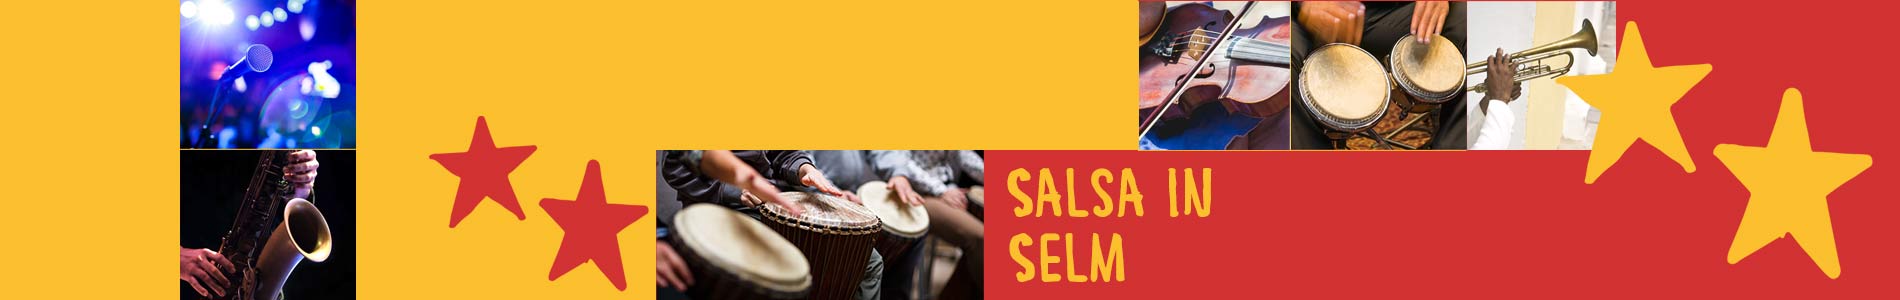 Salsa in Selm – Salsa lernen und tanzen, Tanzkurse, Partys, Veranstaltungen